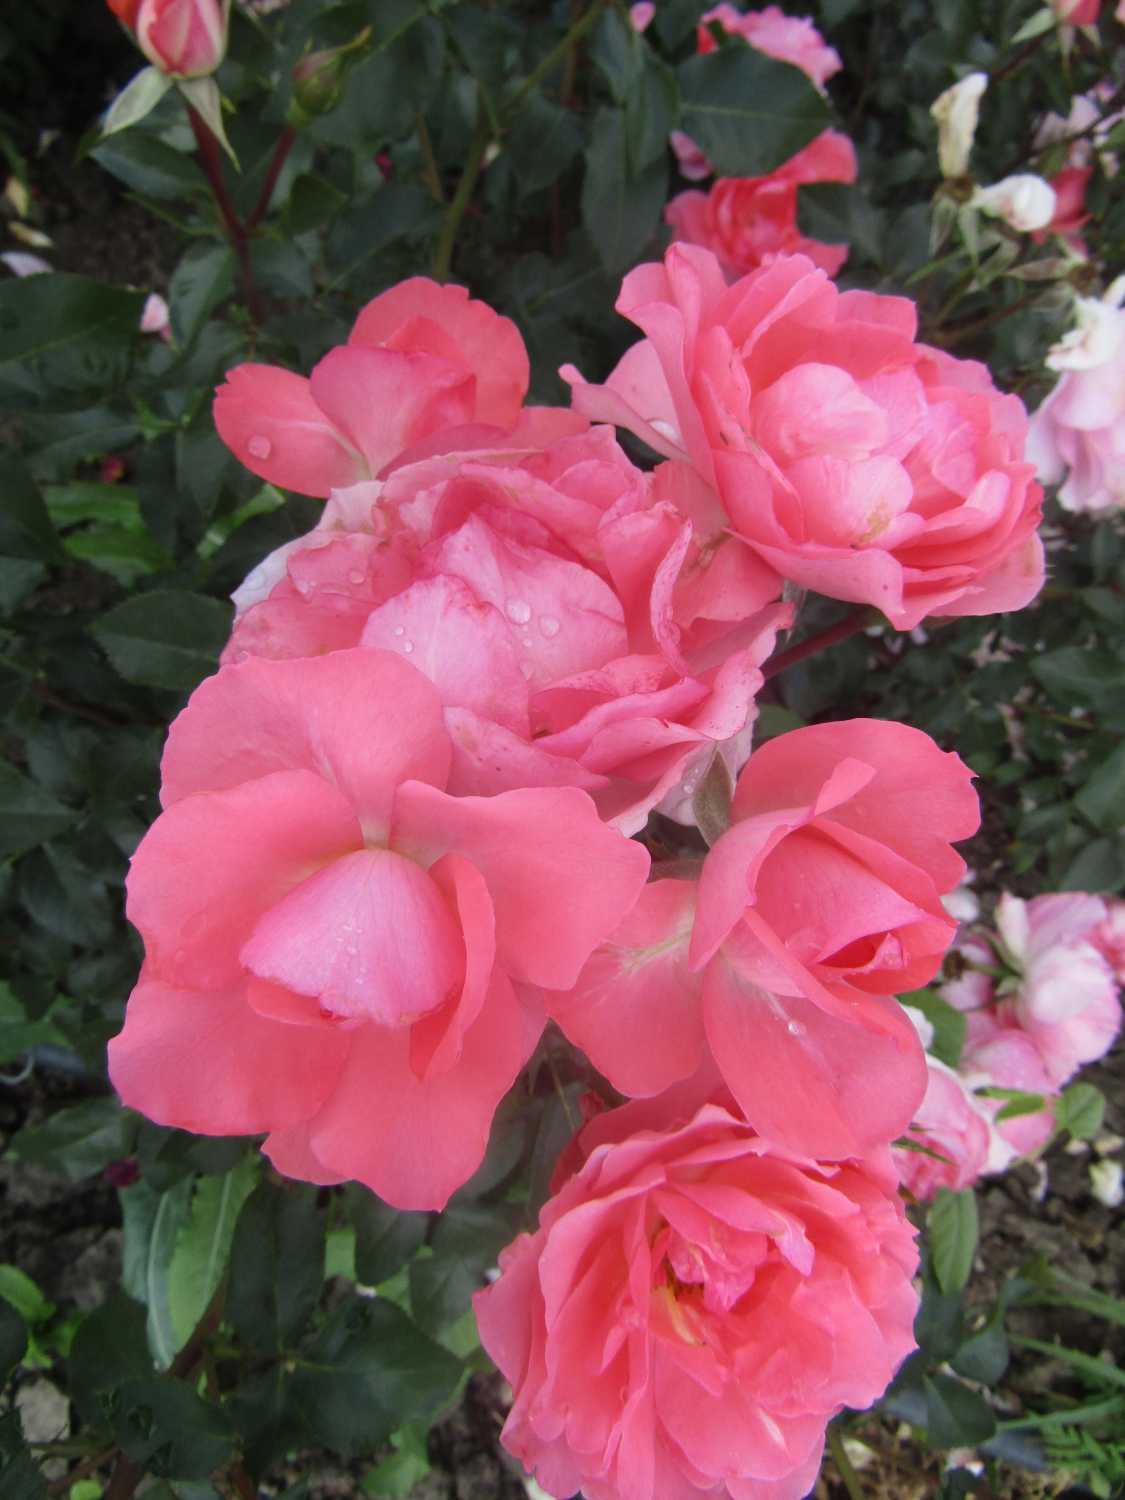 Описание белой почвопокровной розы-шраба сорта бланк мейяндекор или мейдиланд